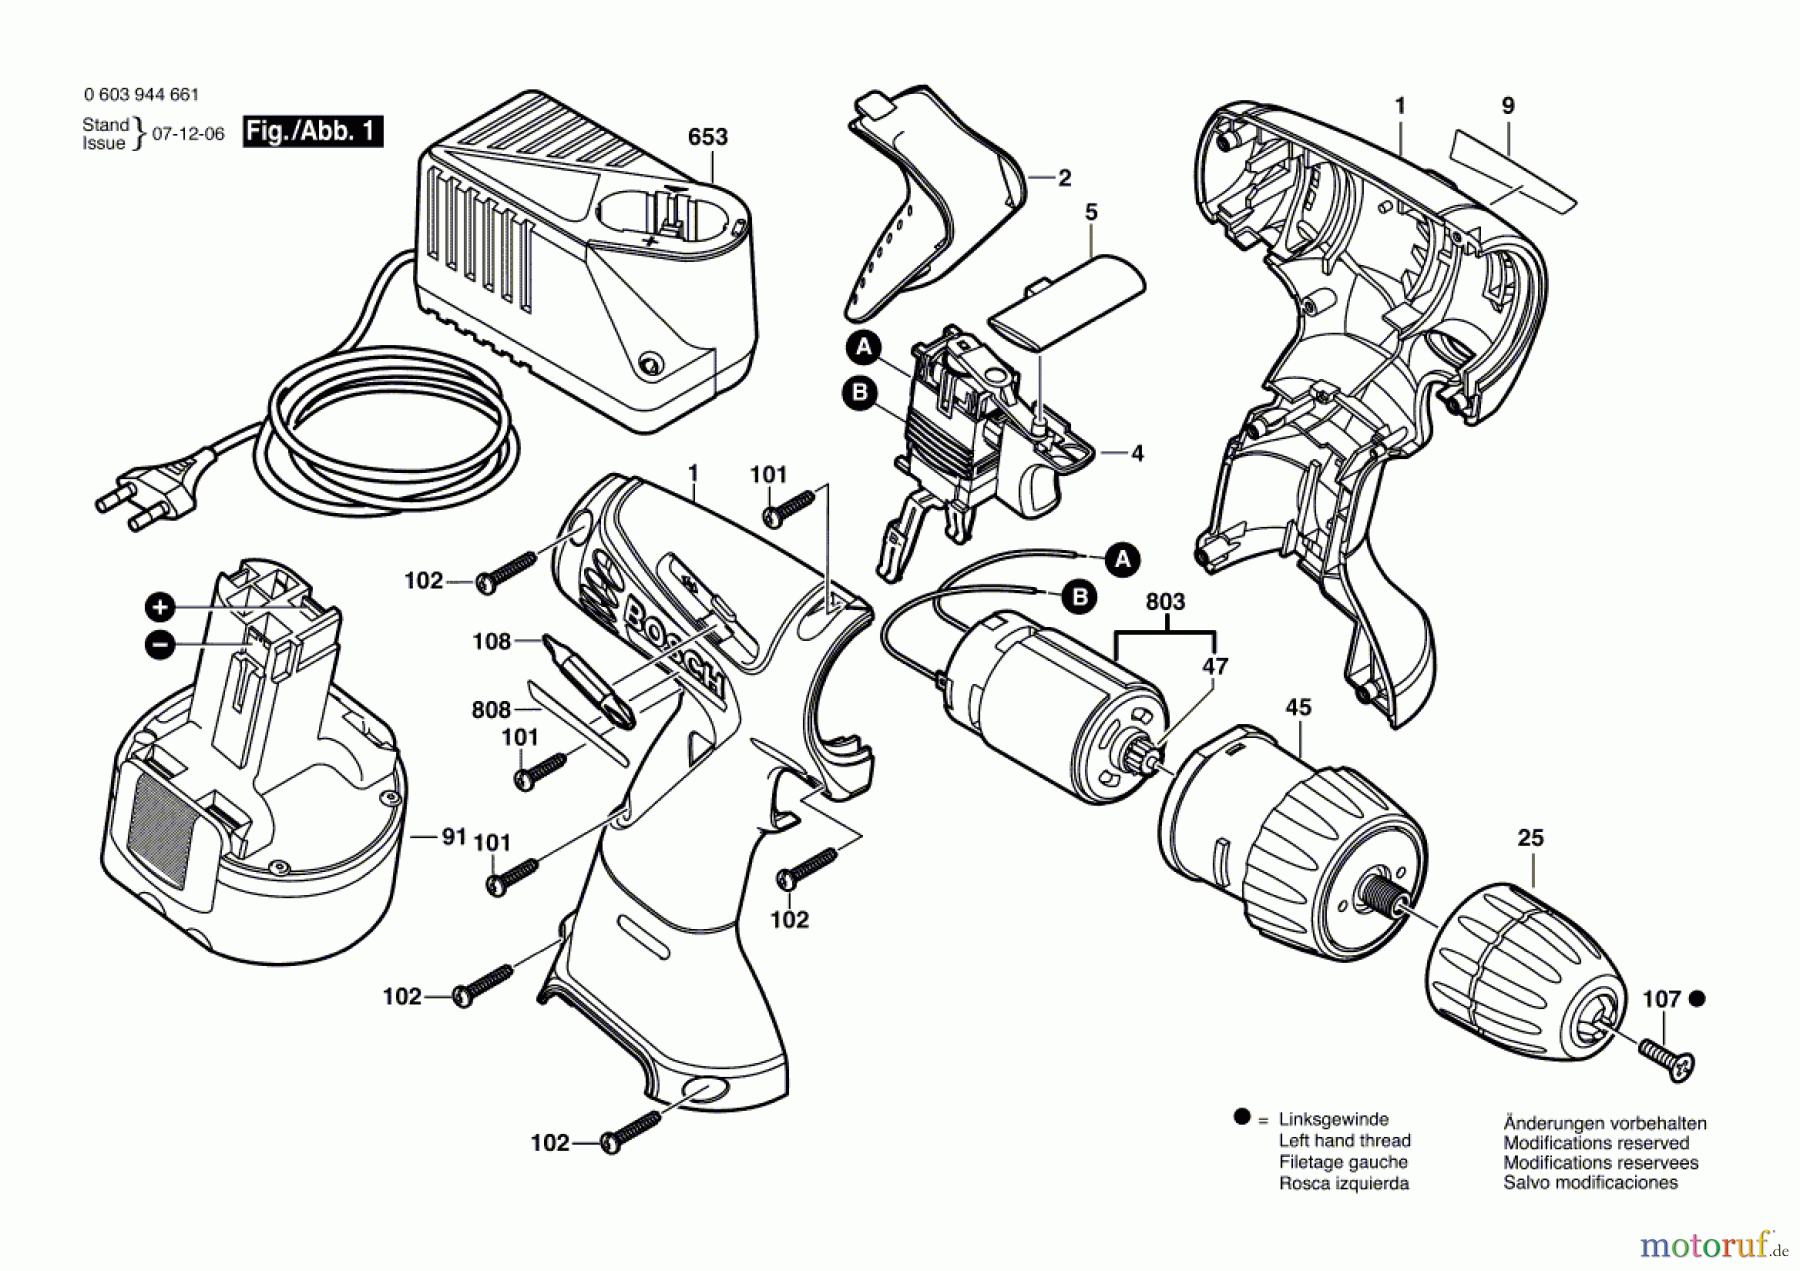  Bosch Werkzeug Schrauber PSR 960 Seite 1